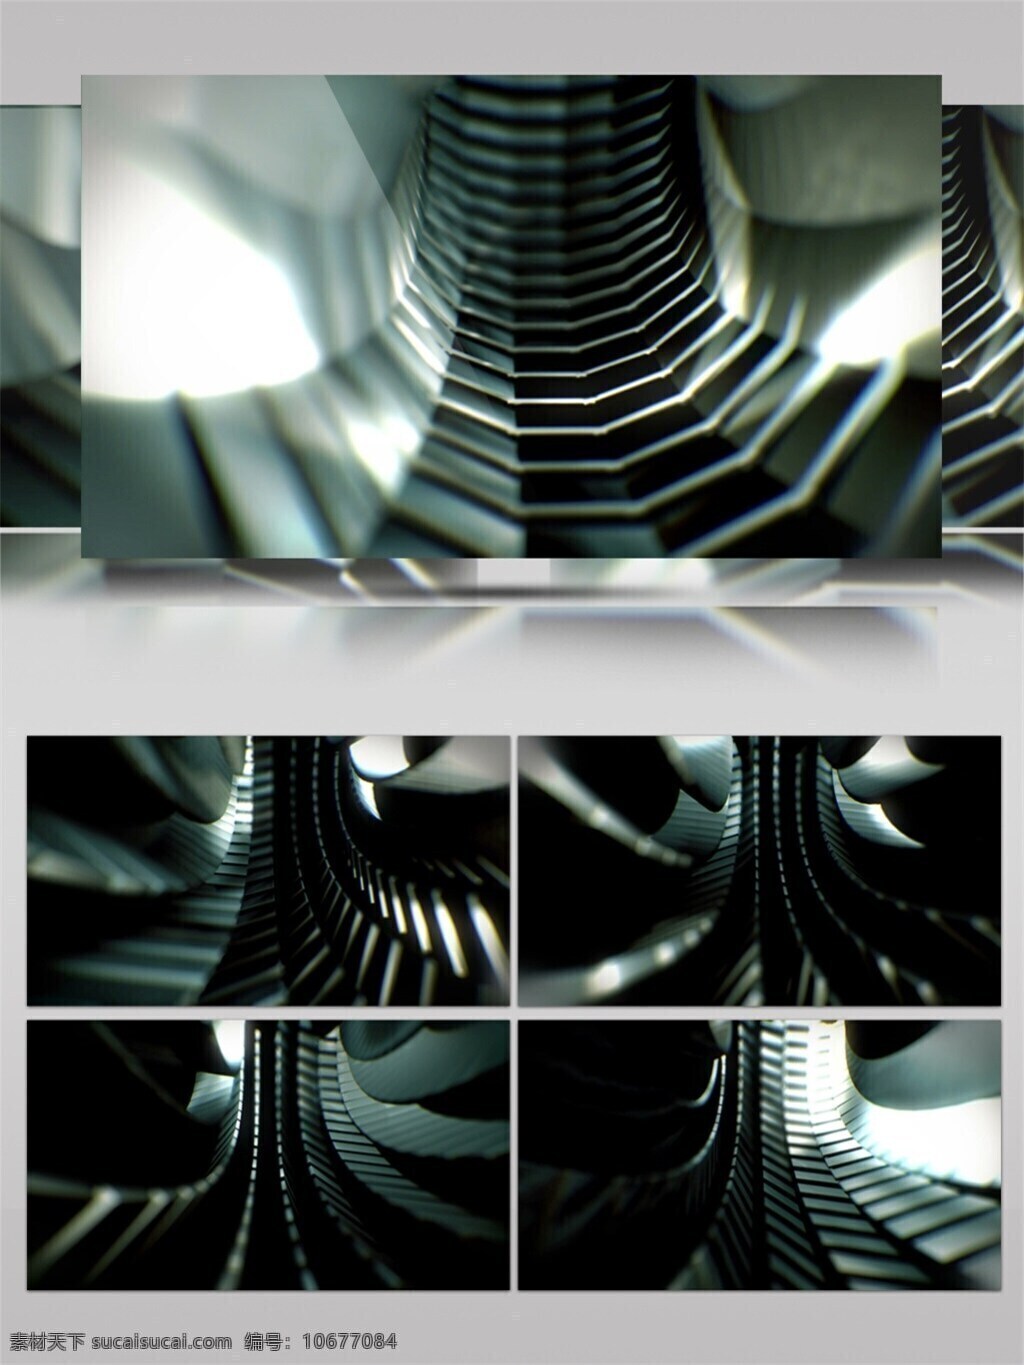 暗灰 楼梯 动态 视频 3d视频素材 led 闪烁 灯光 光灰色 楼梯分割 设计炫酷